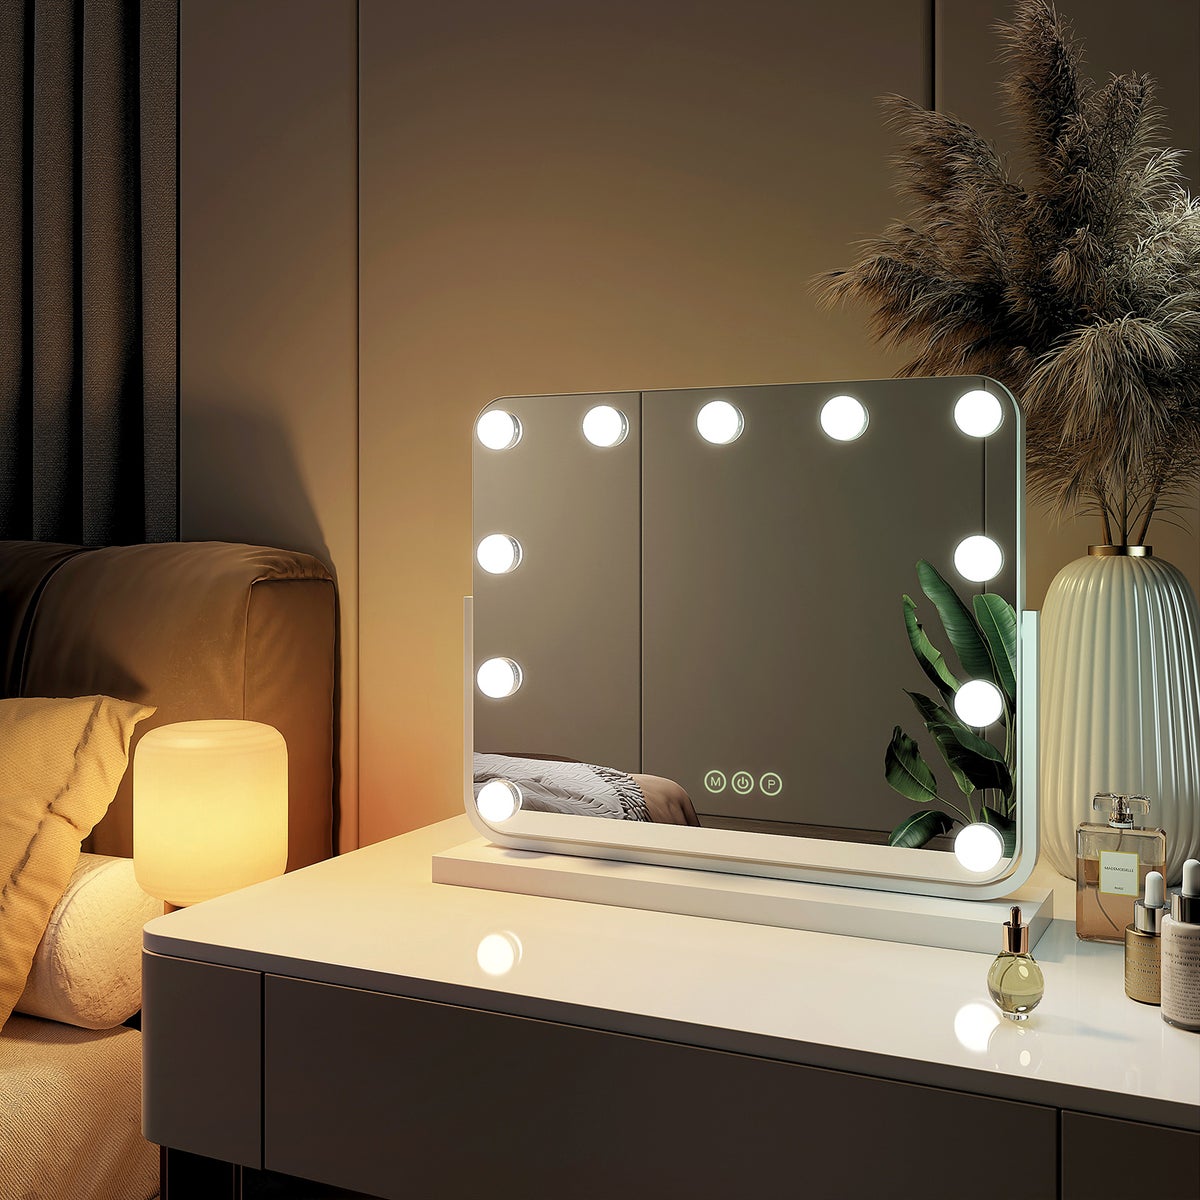 EMKE Kosmetikspiegel Hollywood Spiegel mit Beleuchtung 360 ° Drehbar Tischspiegel 3 Farbe Licht,11 Dimmbaren LED-Leuchtmitteln,Speicherfunktion,7 x Vergrößerungsspiegel,Weiß,50 x 42 cm